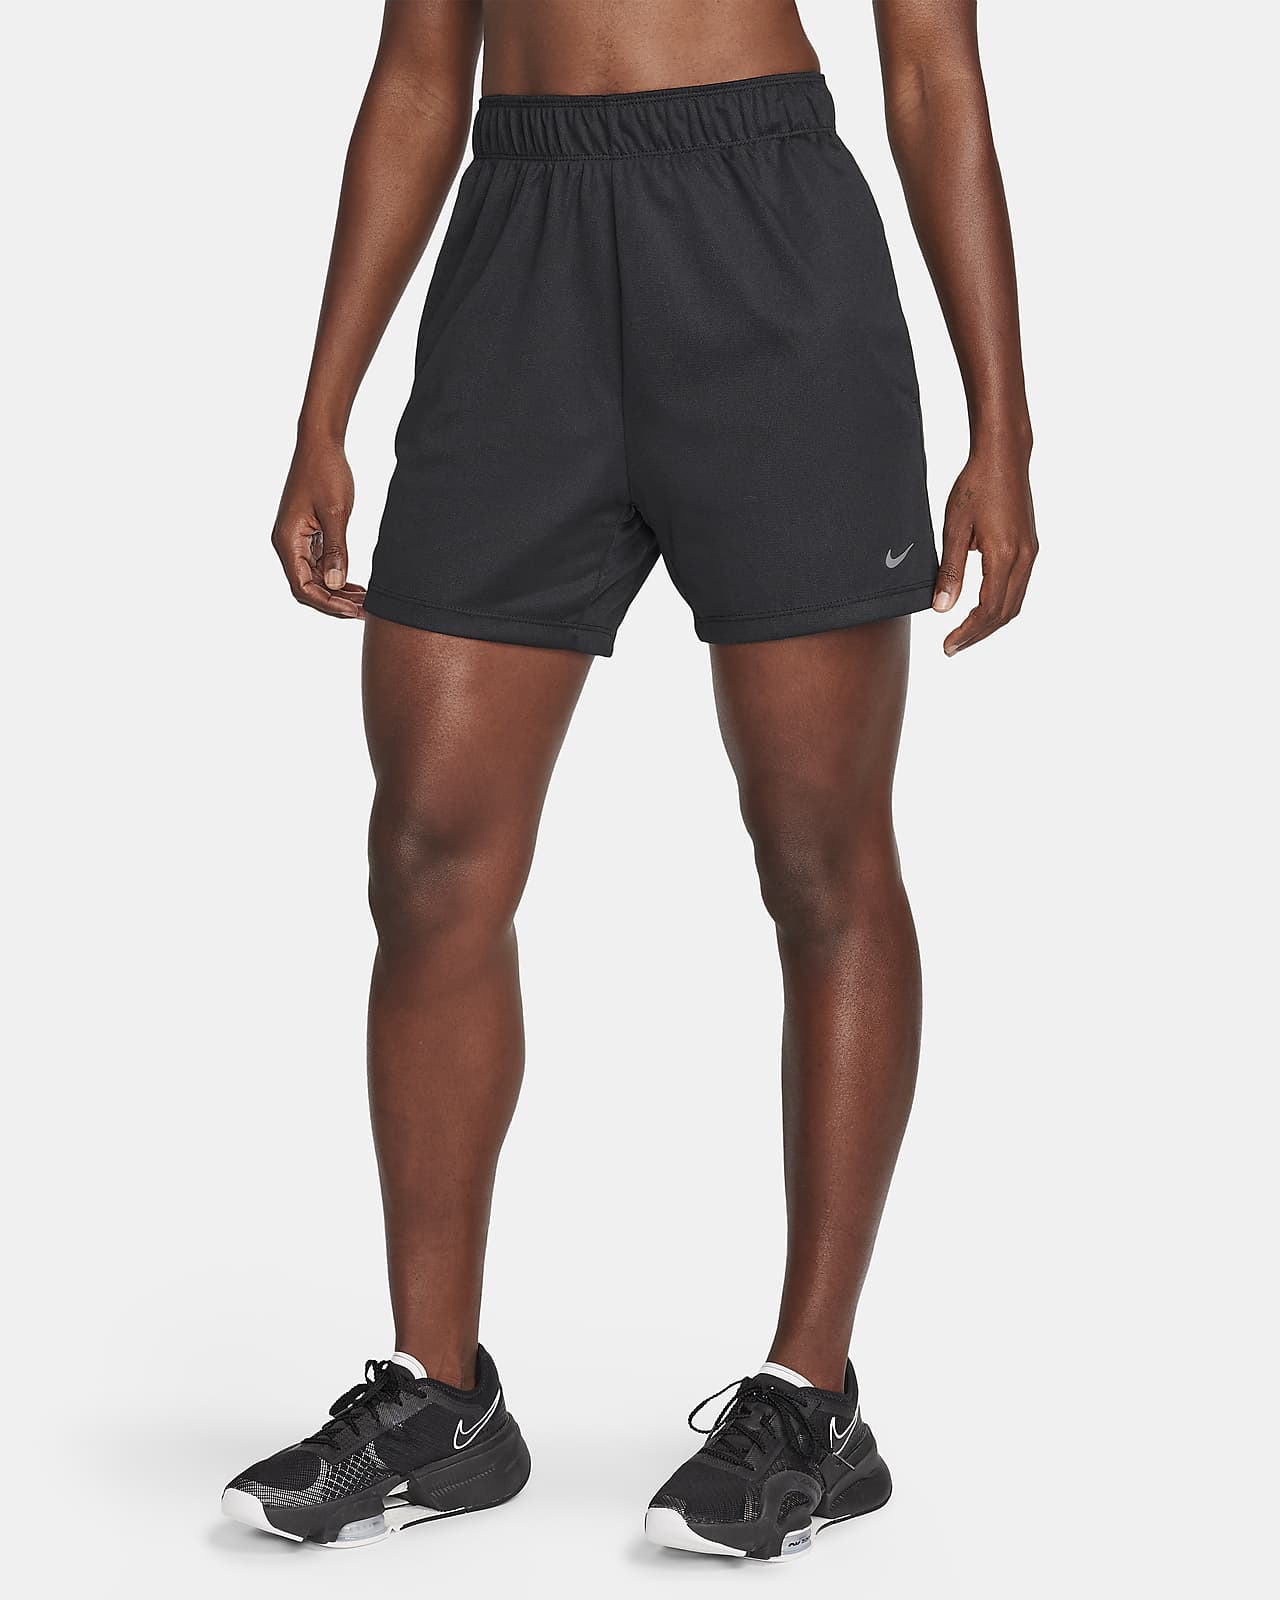 Short de fitness Dri-FIT taille mi-haute 13 cm non doublé Nike Attack pour femme